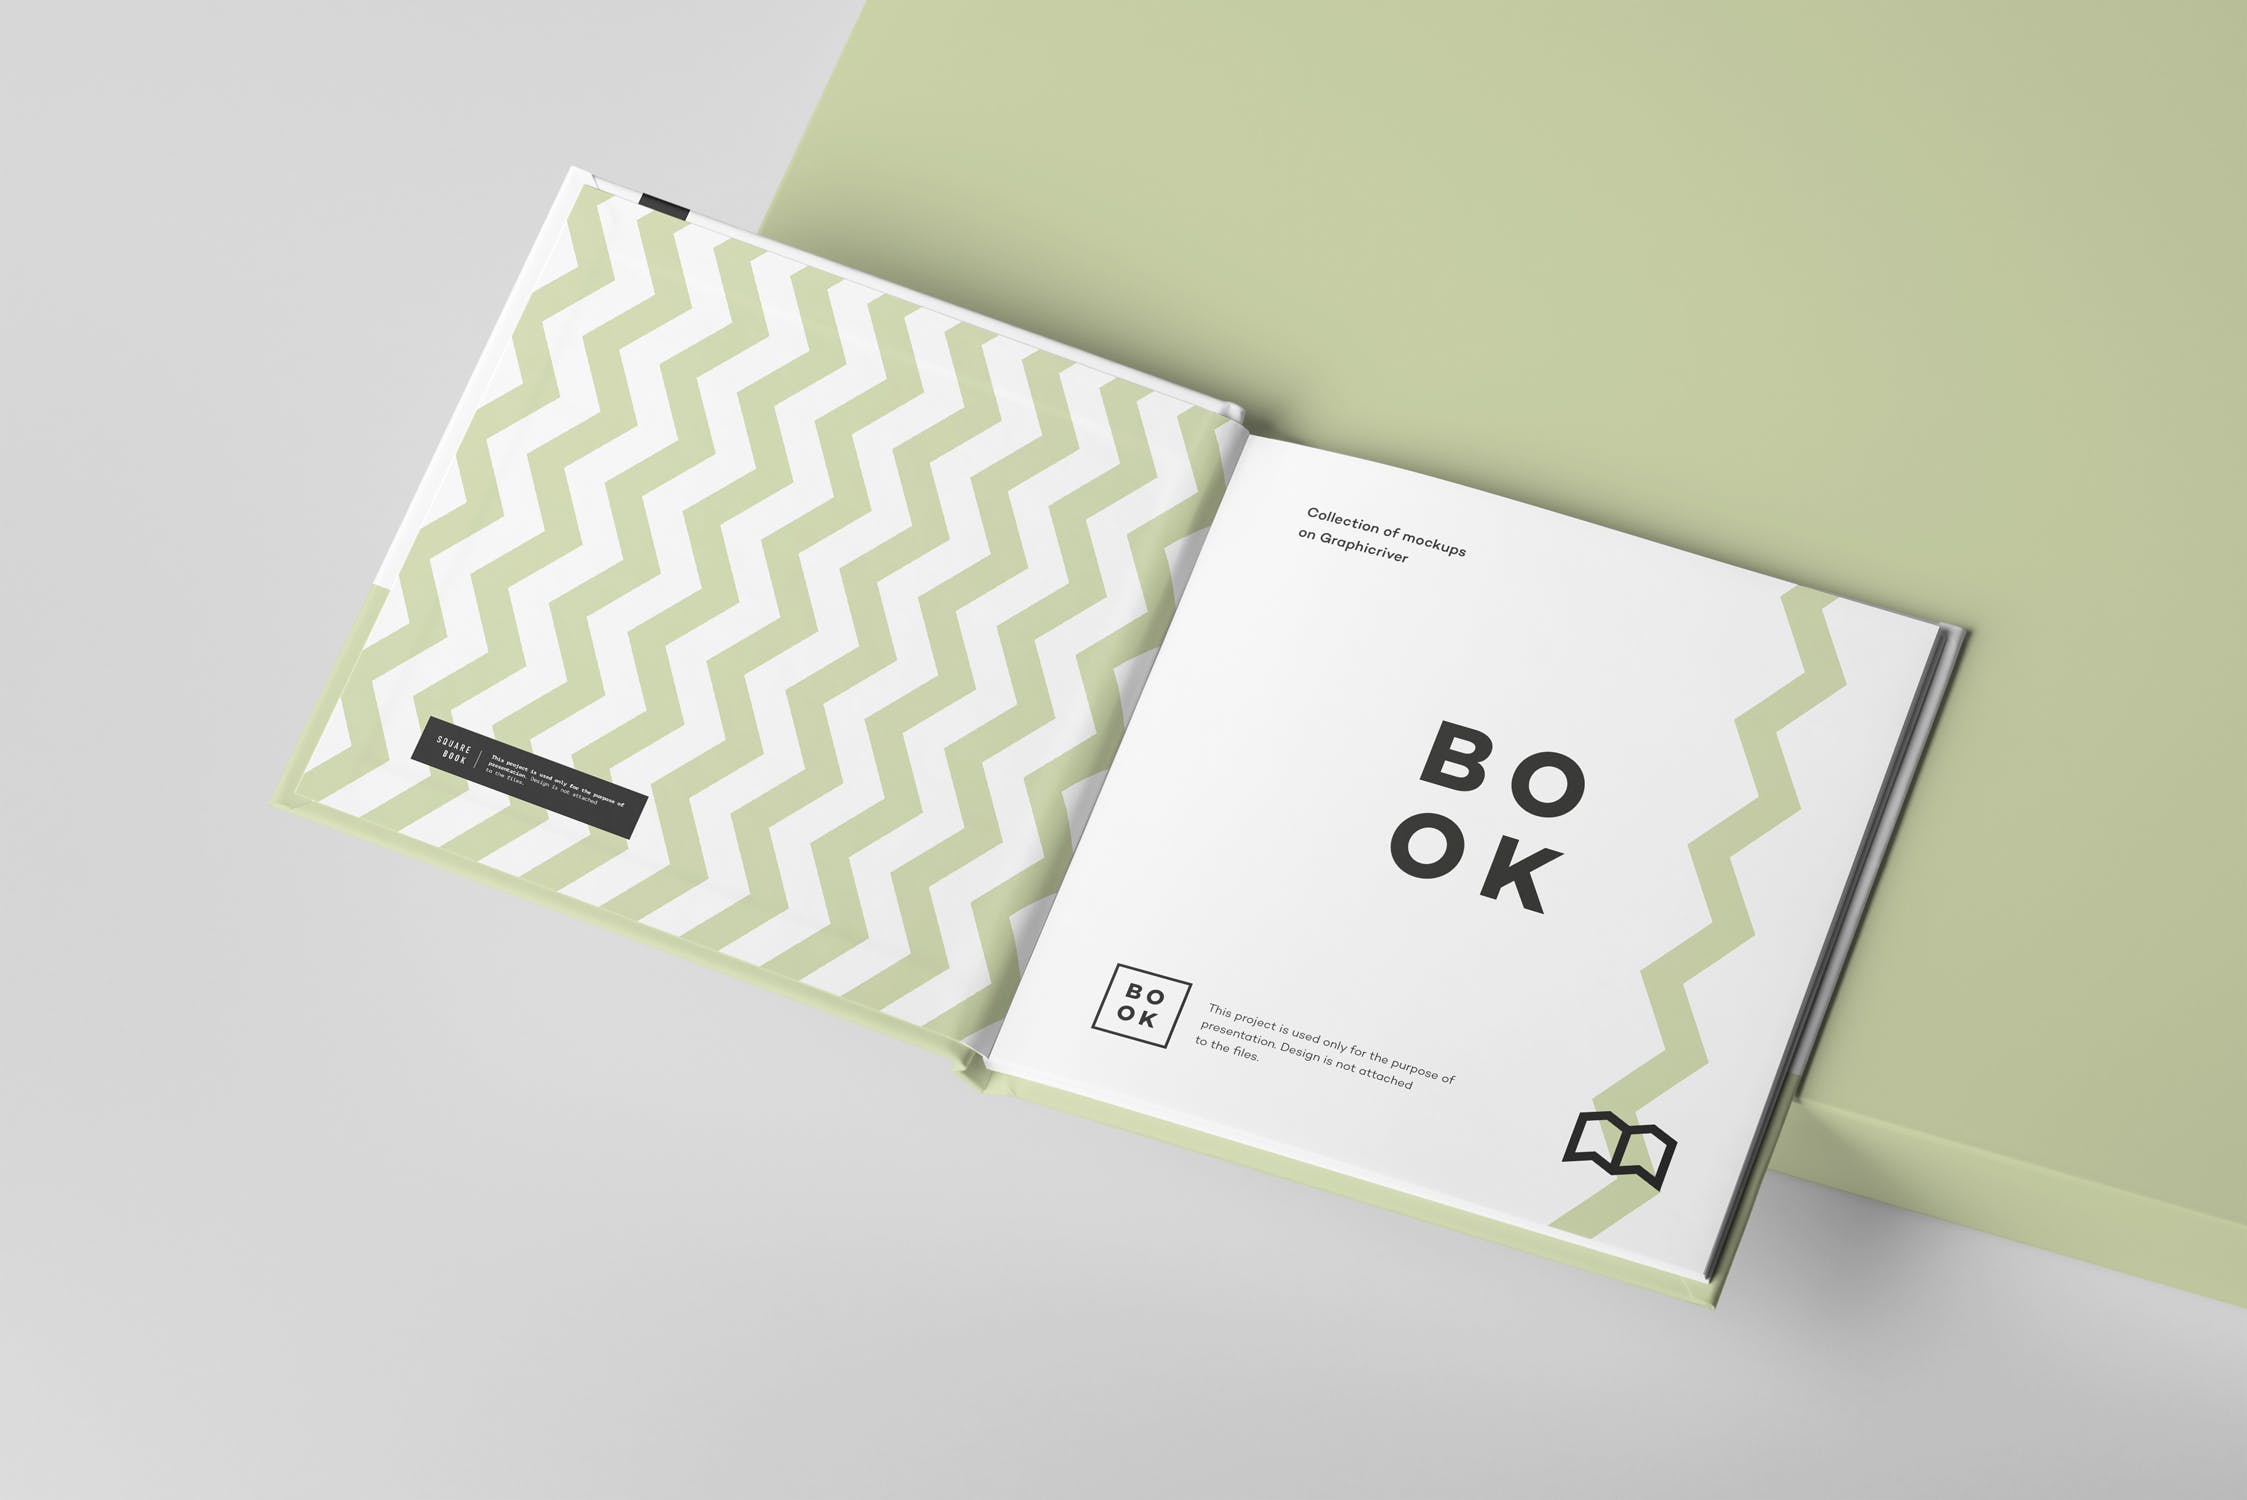 方形精装图书封面&内页版式设计预览样机 Square Book Mock up 2插图(4)